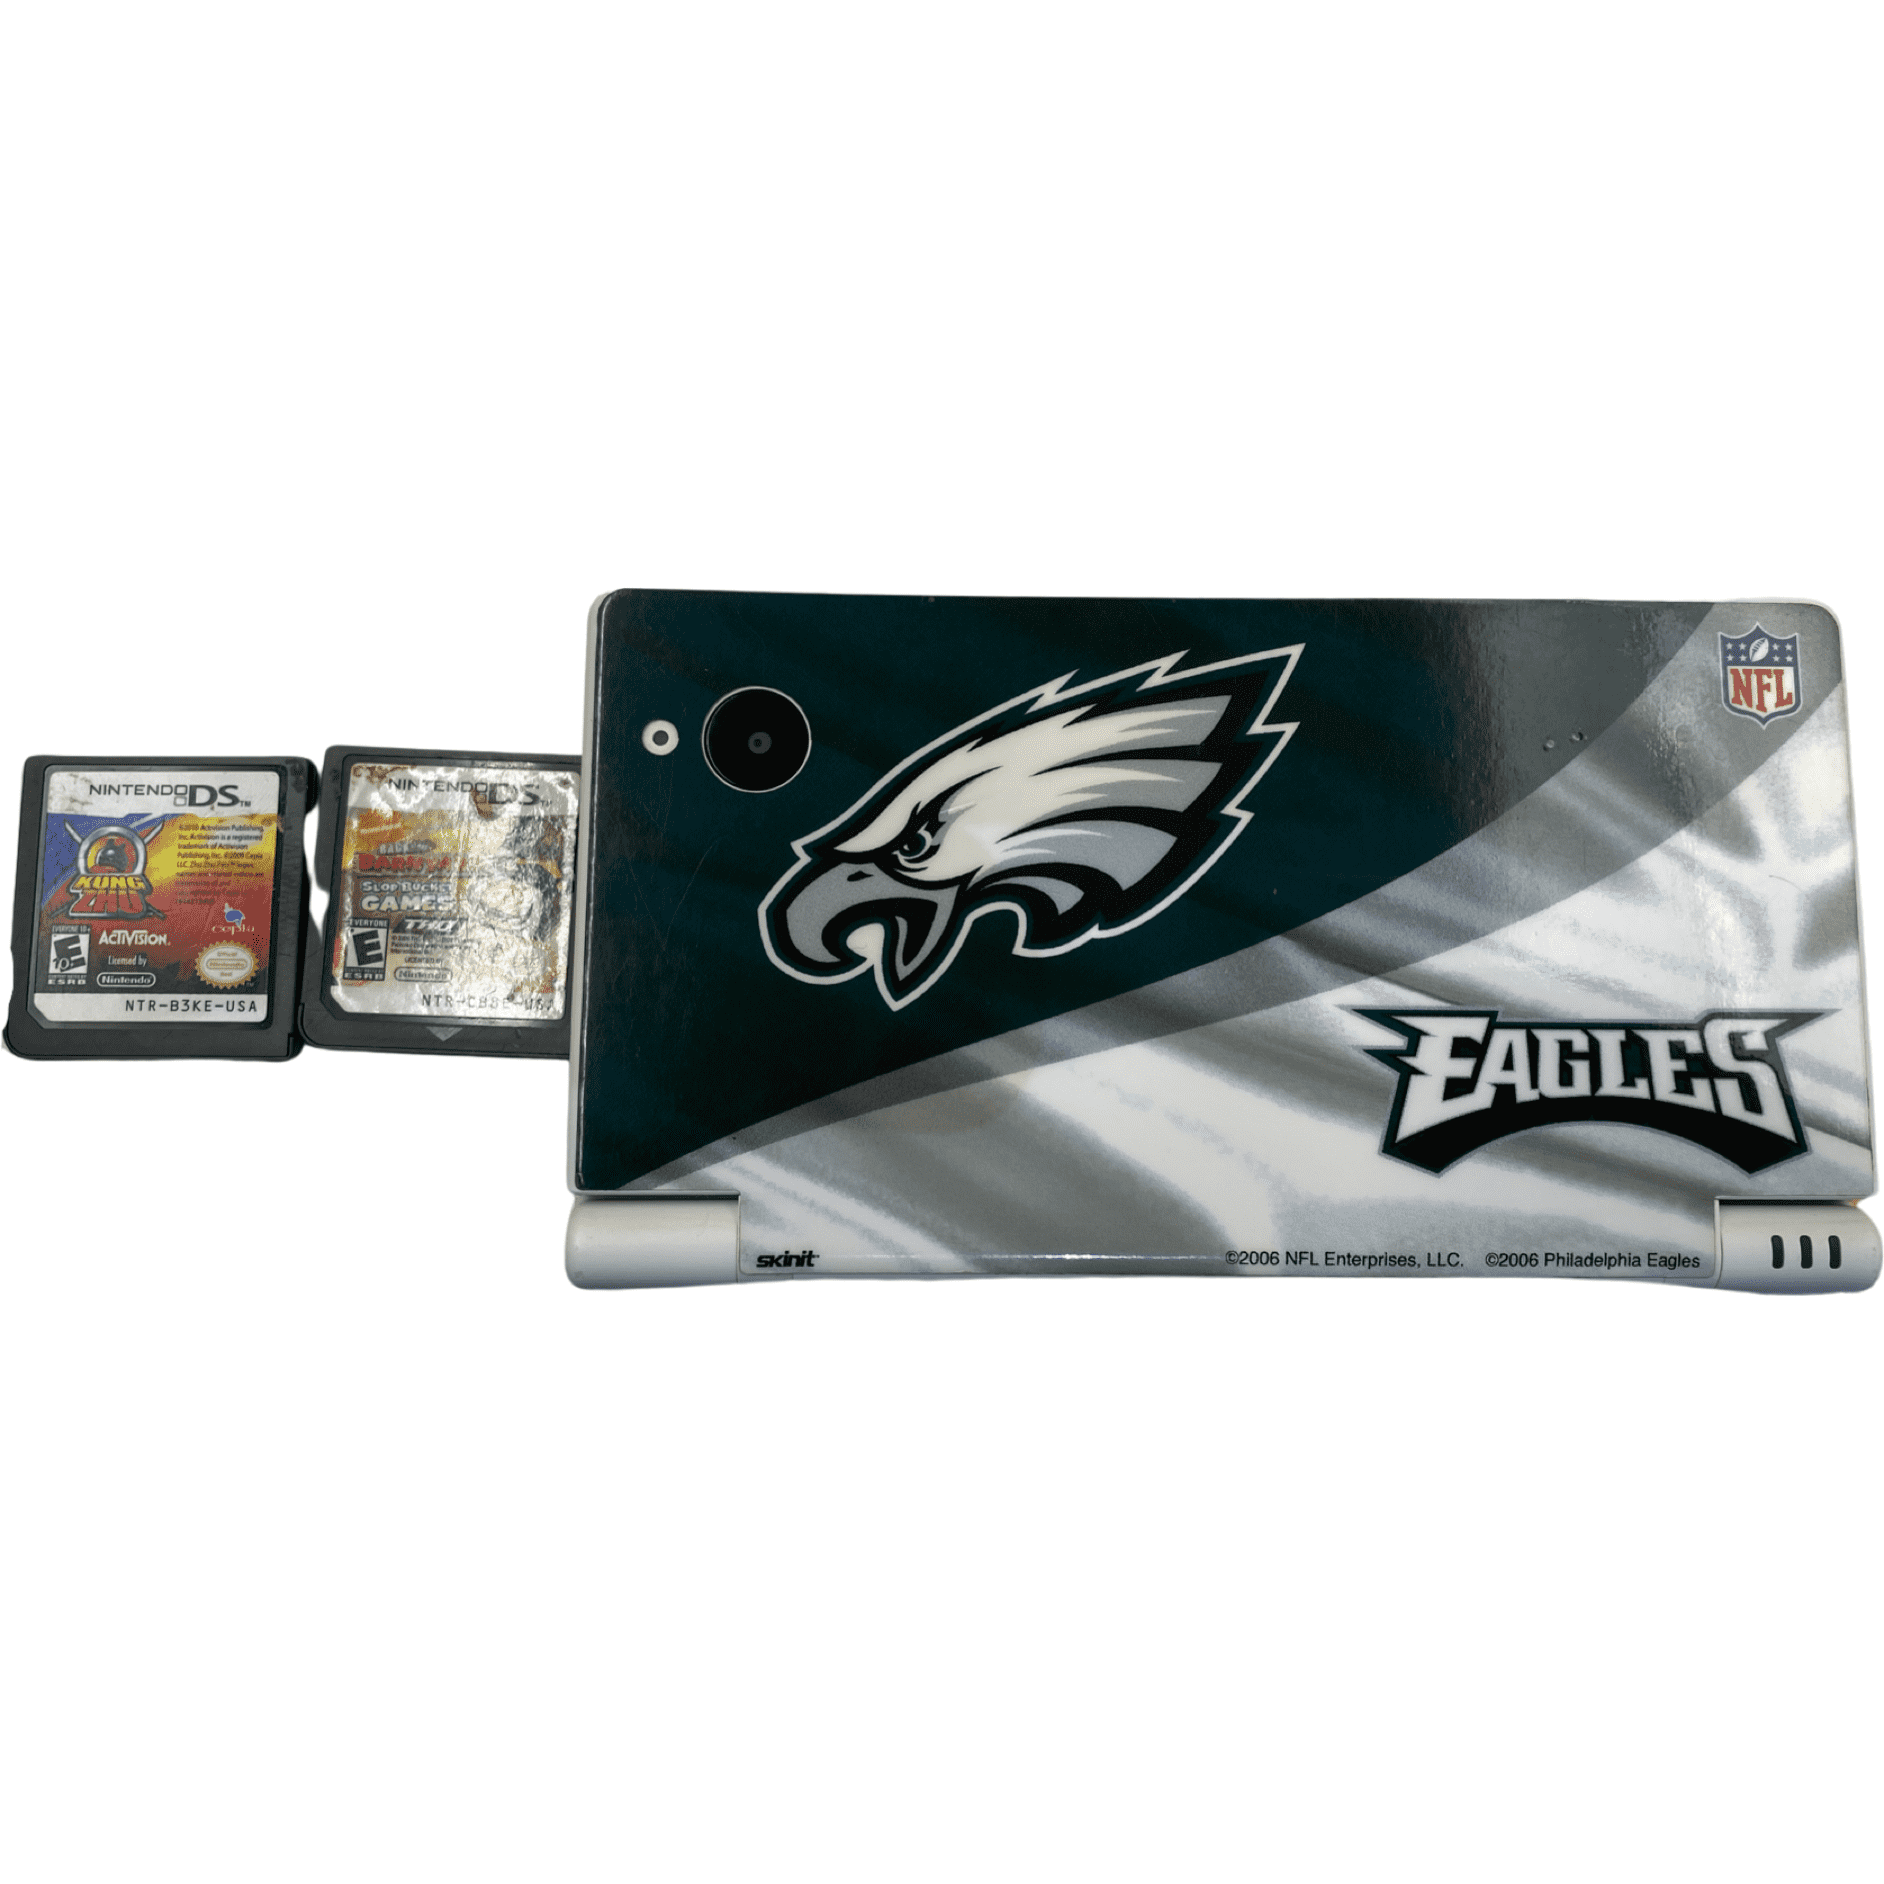 Preços baixos em Philadelphia Eagles Memorabilia usada de jogos da NFL